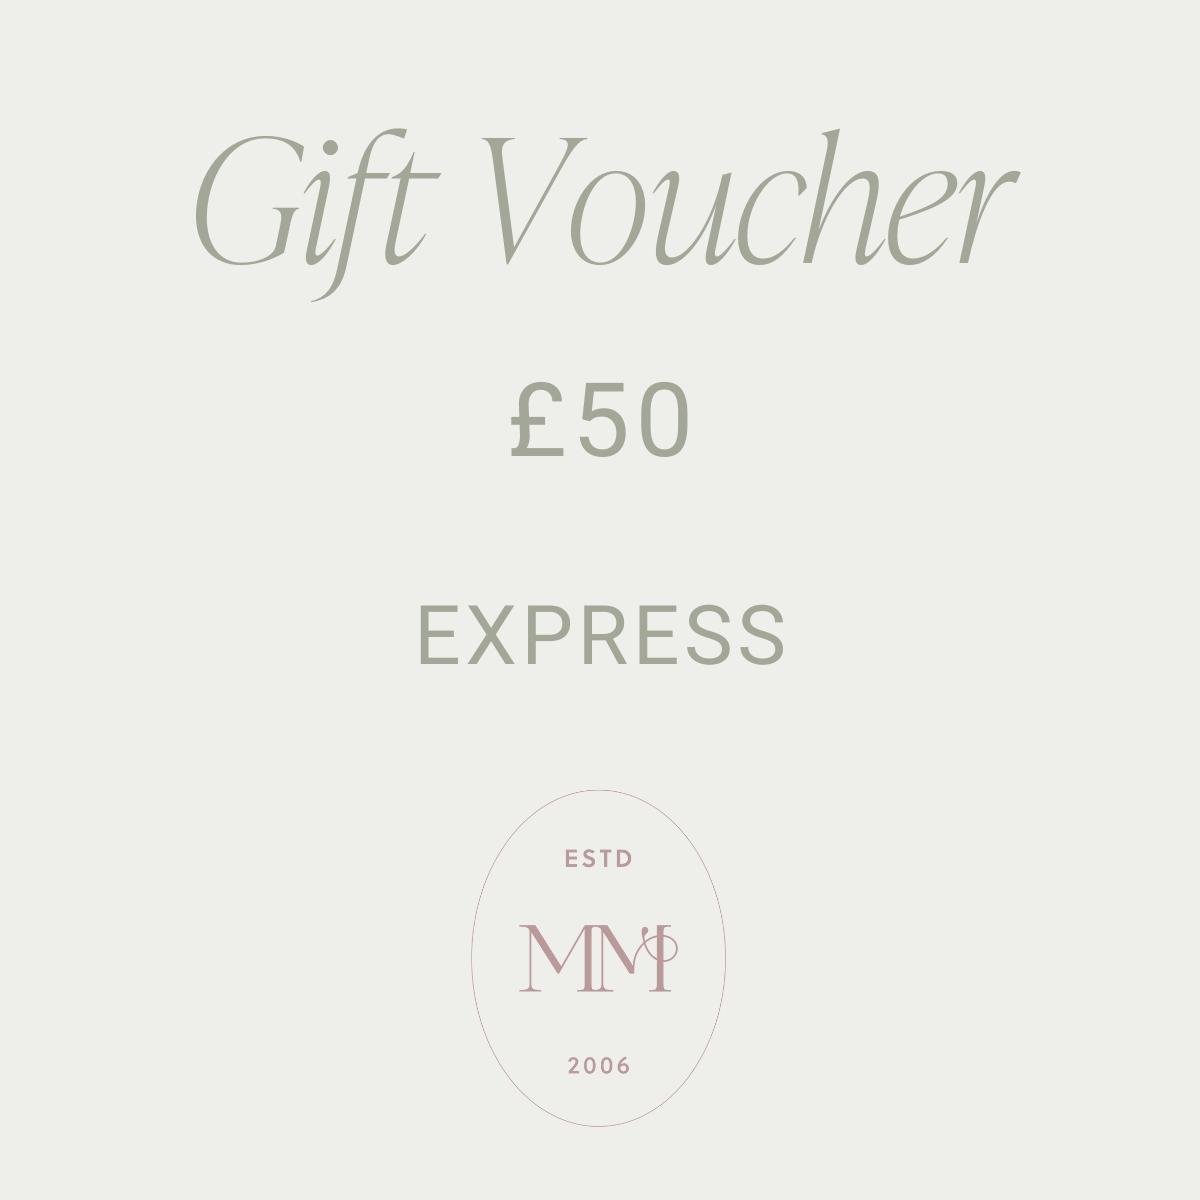 Gift Voucher £50.00 : EXPRESS